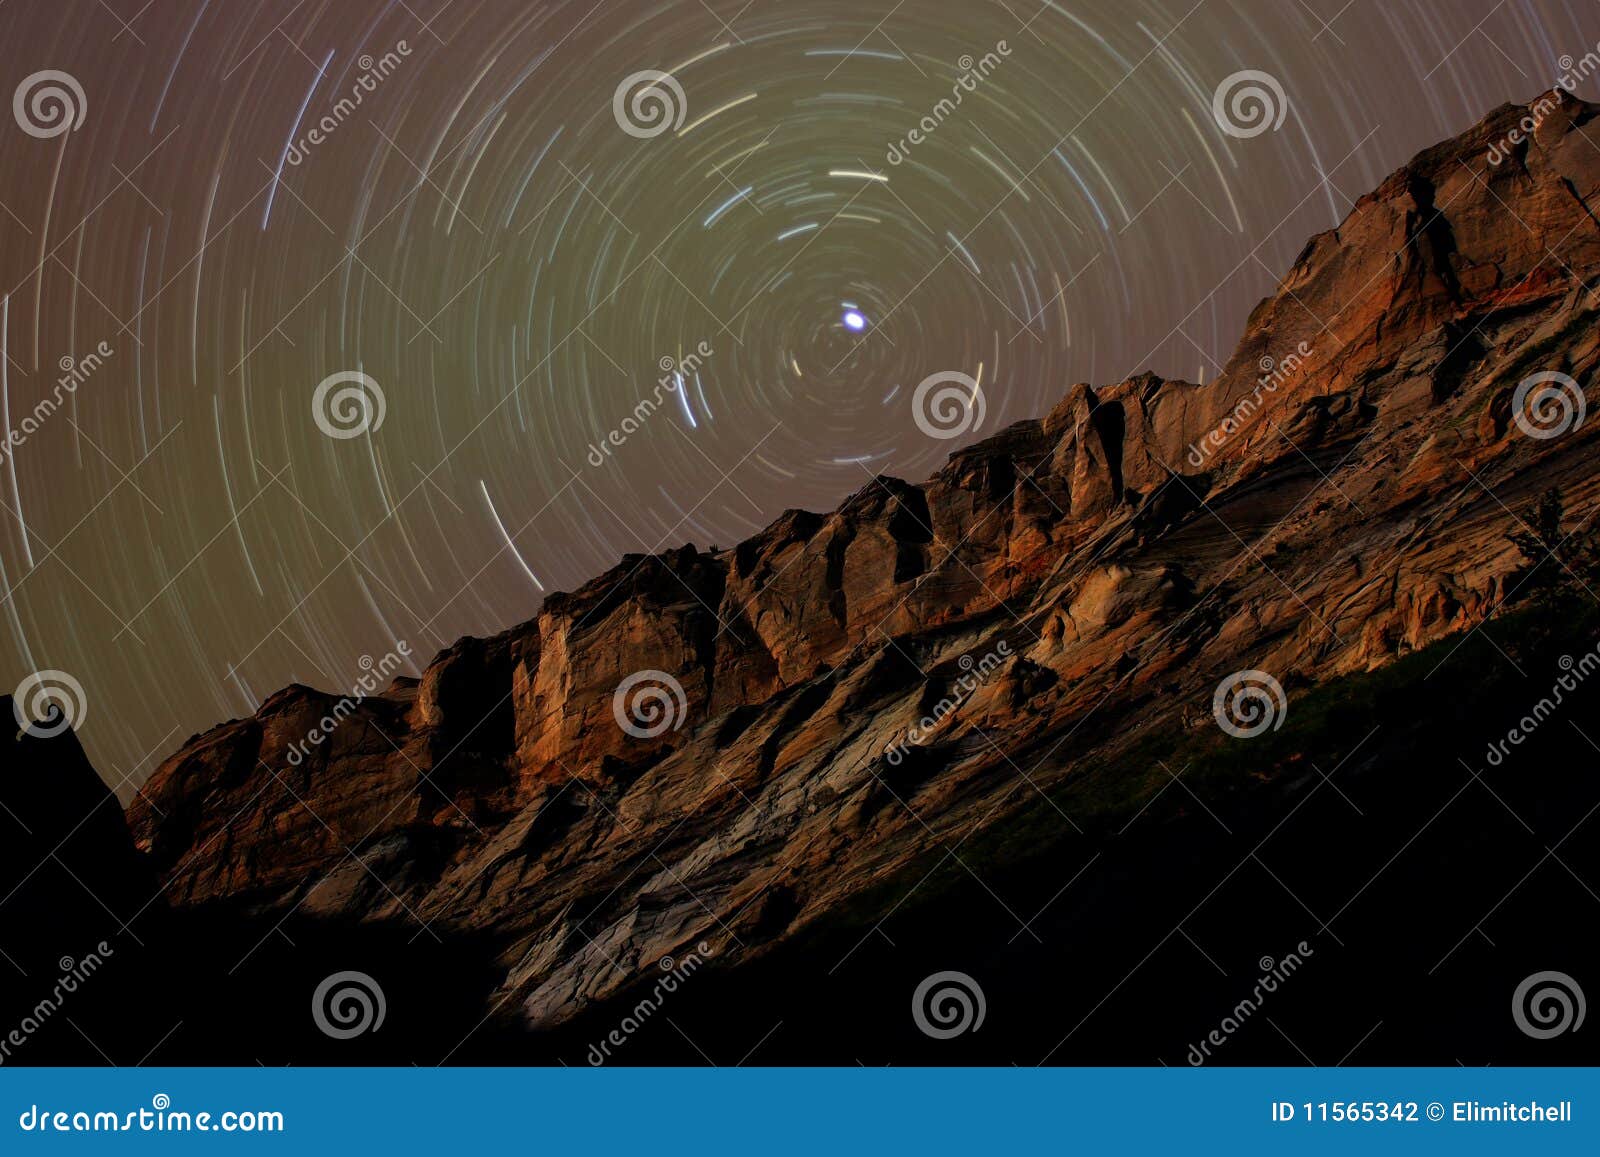 star trails around polaris above desert cliffs